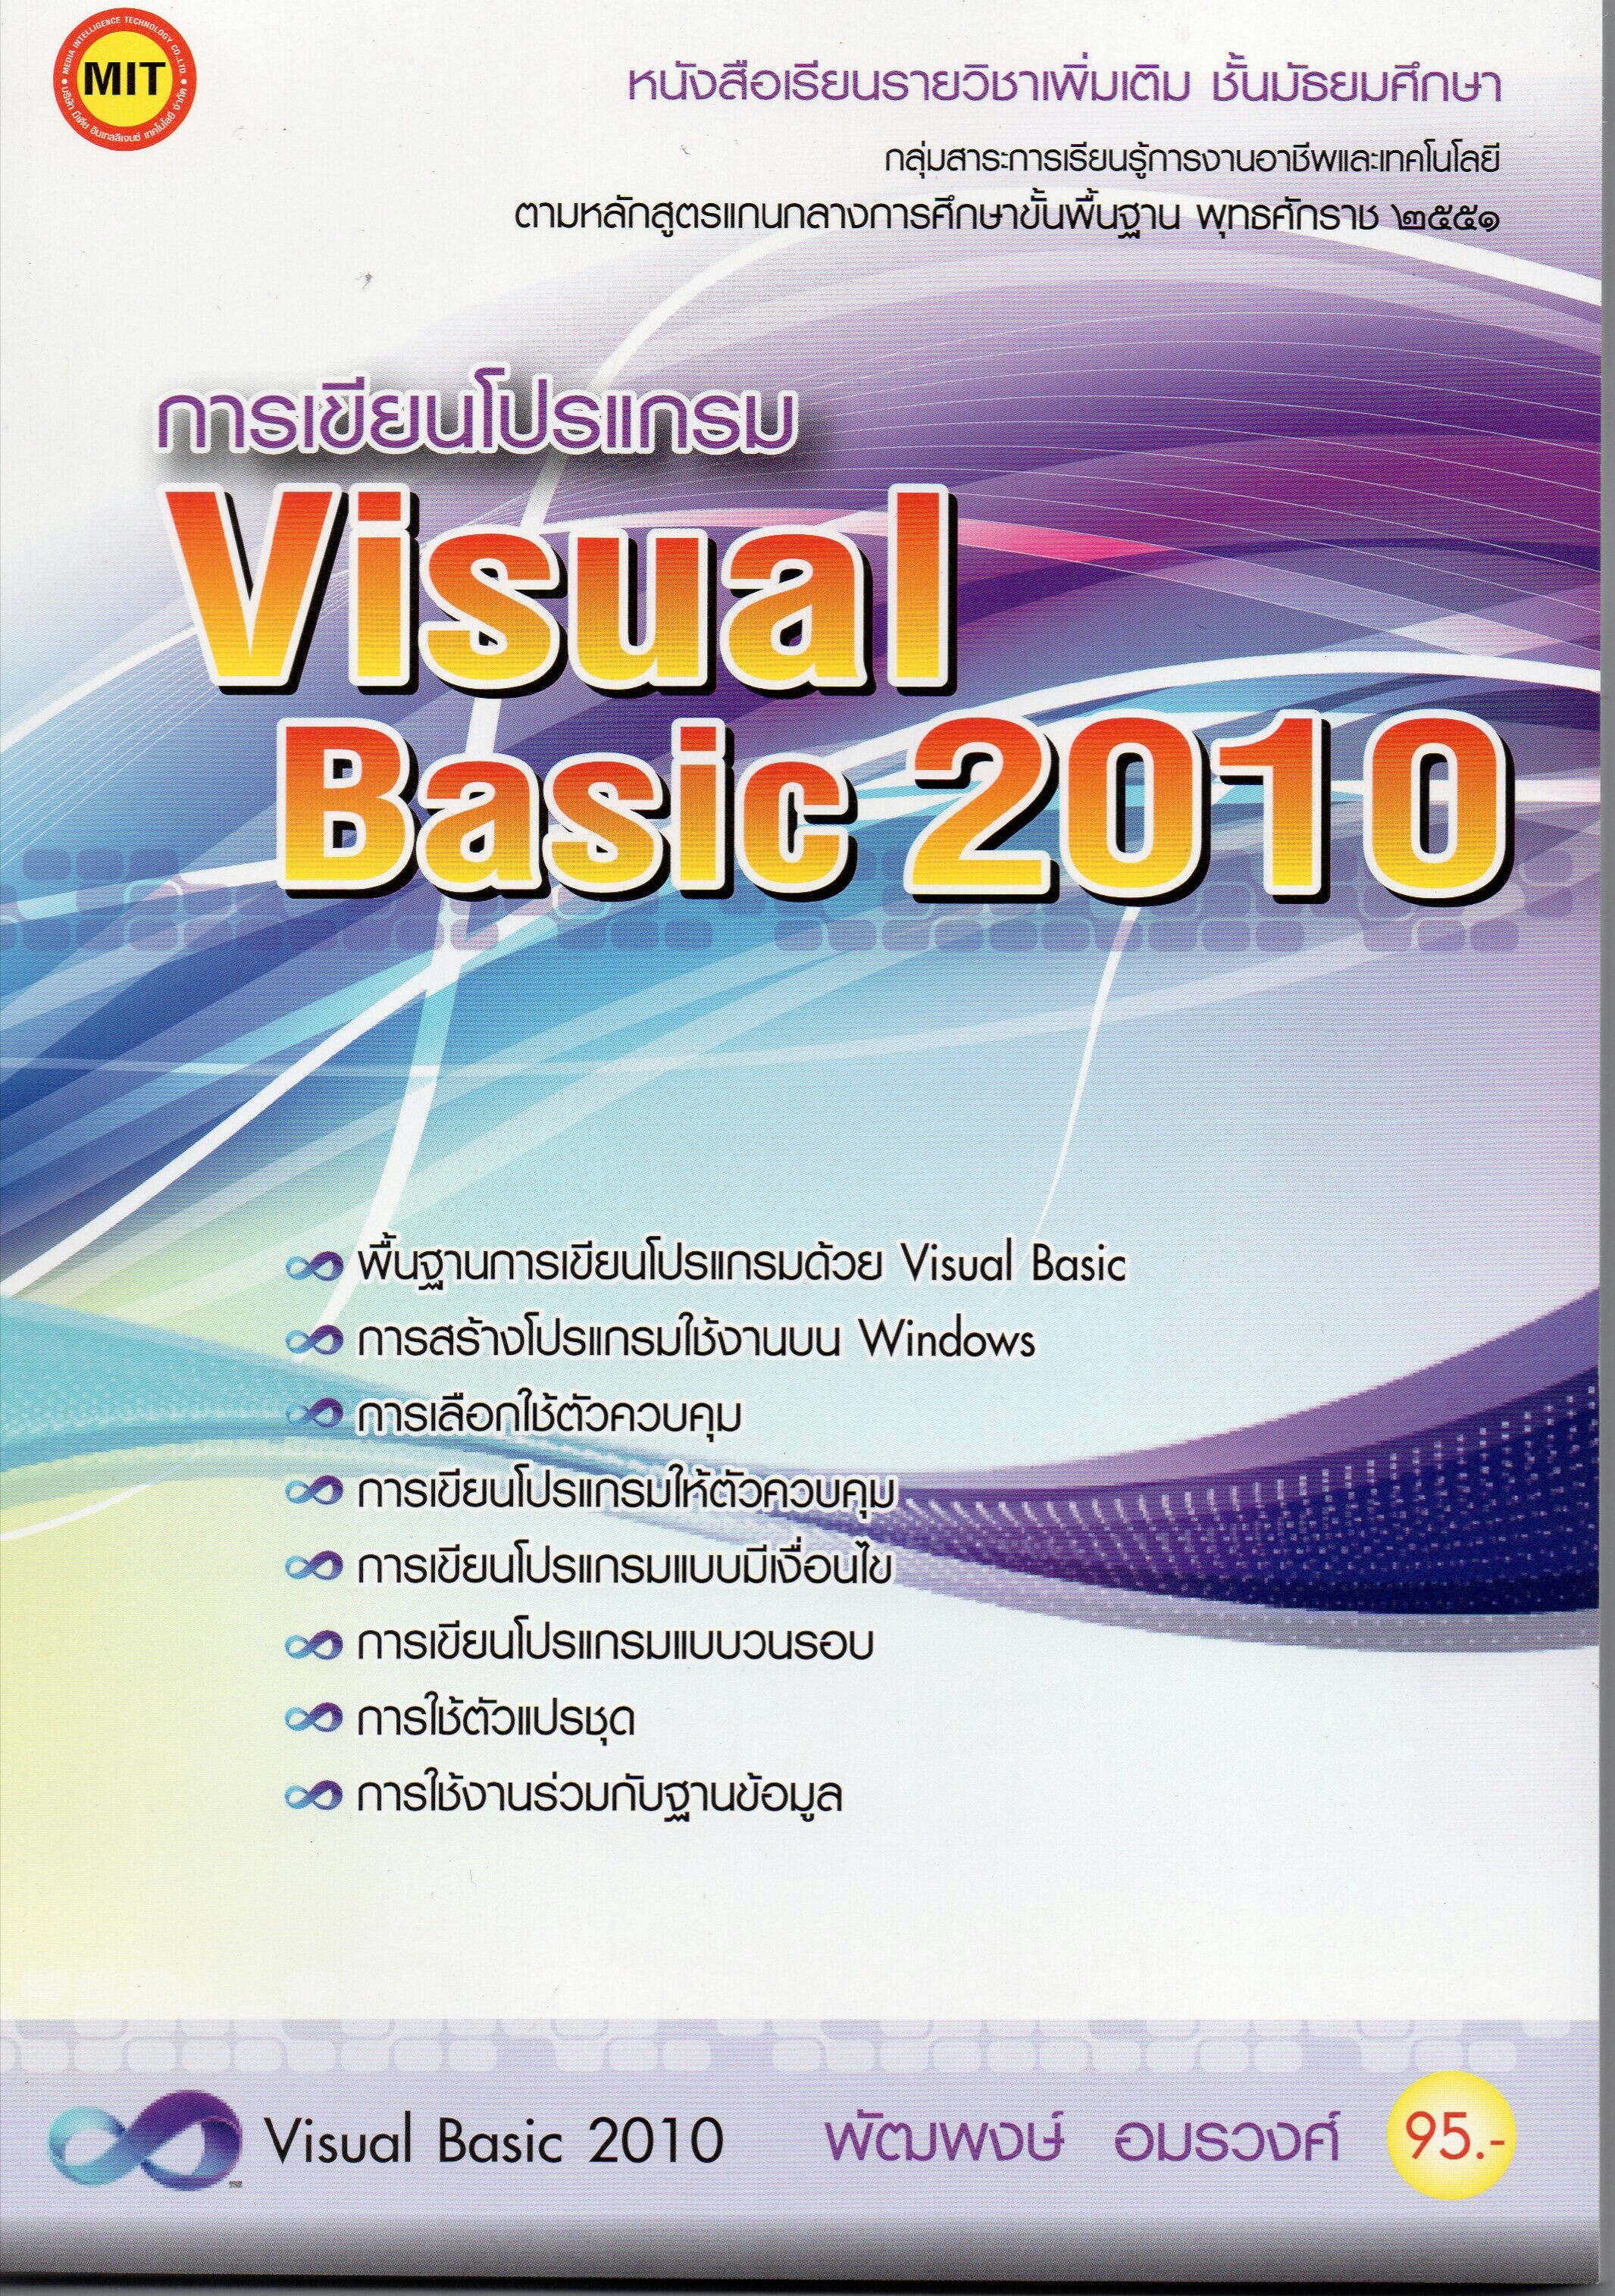 หนังสือเรียน การเขียนโปรแกรม Visual Basic 2010 | Lazada.Co.Th